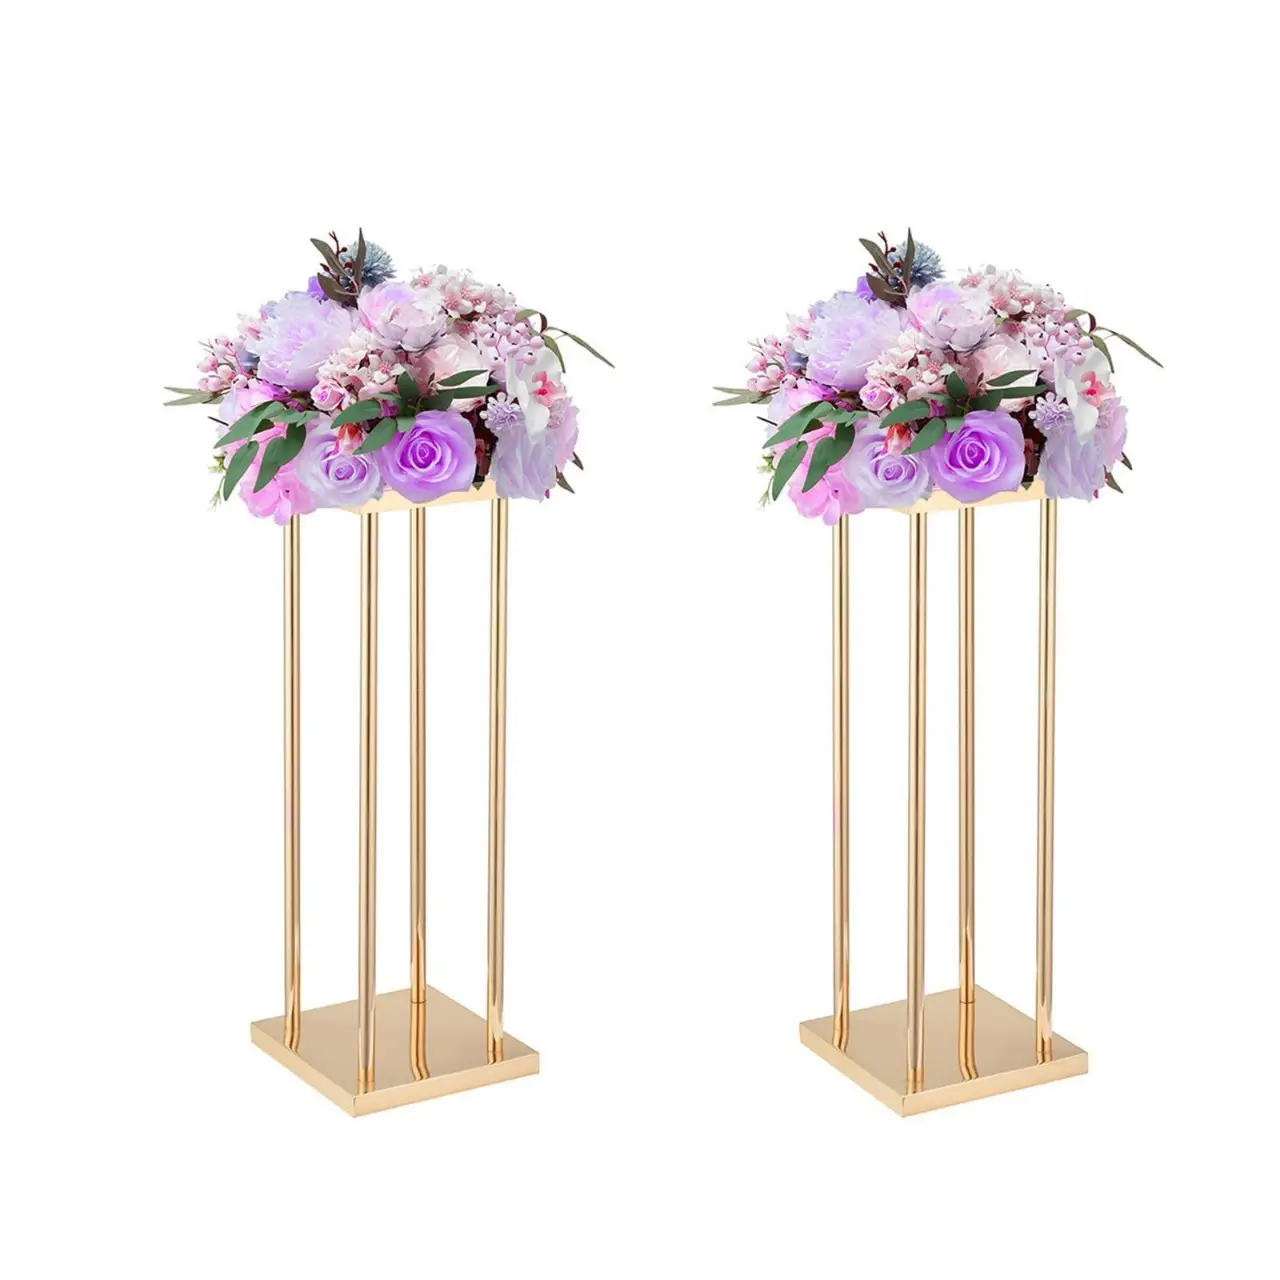 शादियों के लिए लोहे के फूल स्टैंड, शादी के फूलों की सजावट स्टैंड, ऐक्रेलिक फूल स्टैंड